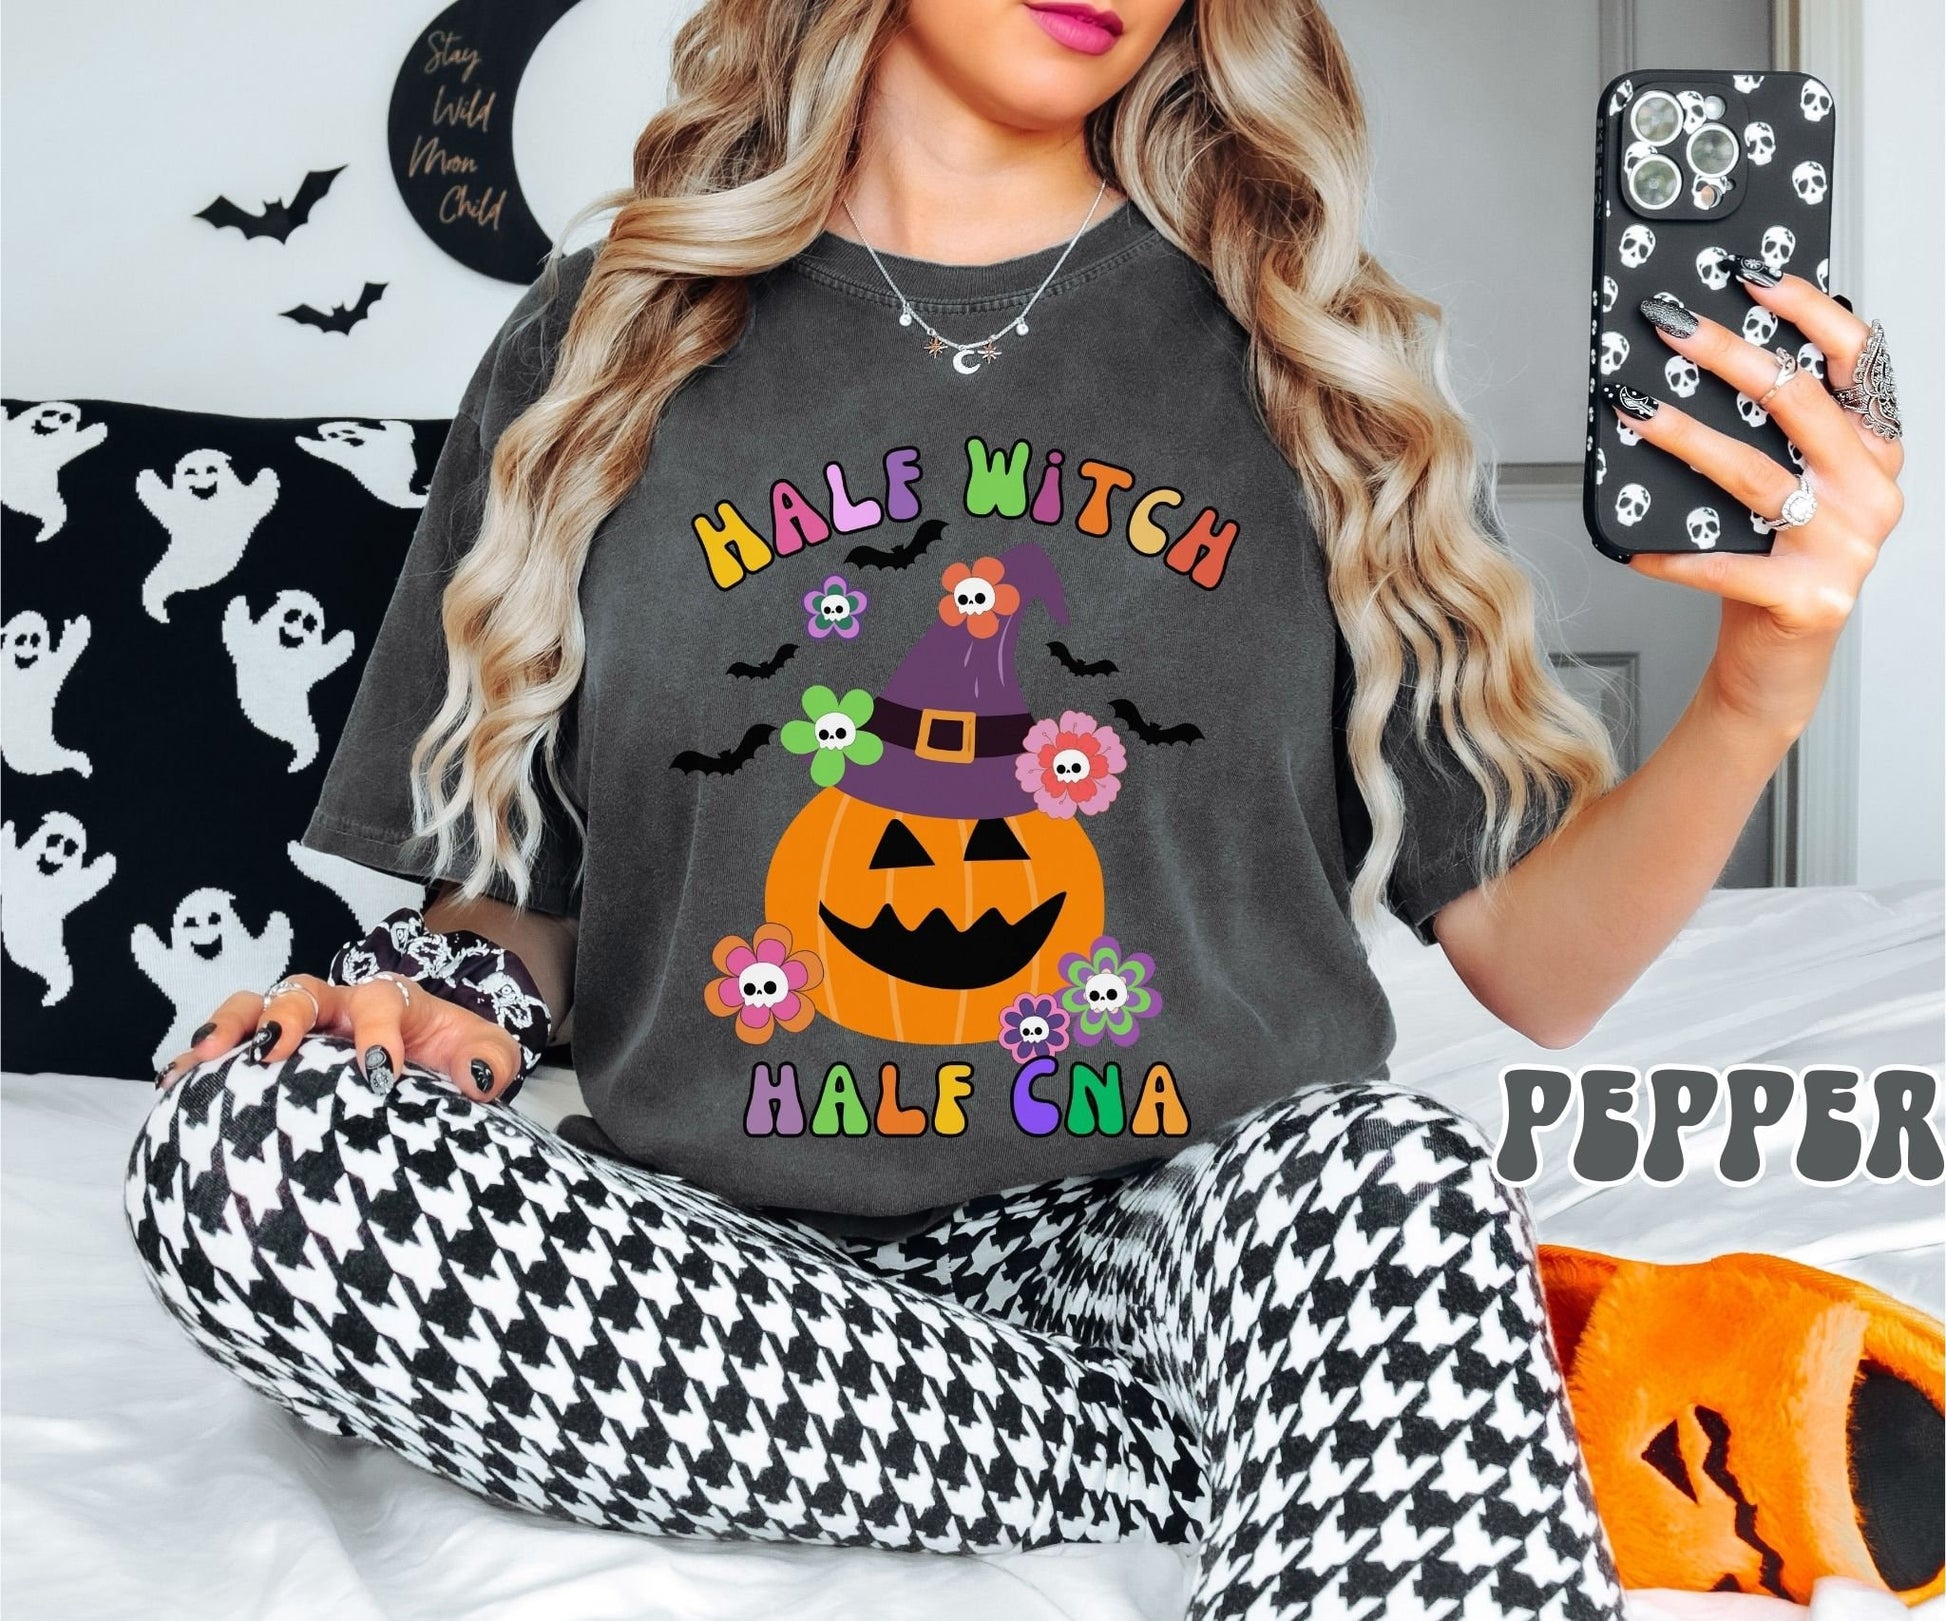 Comfort Colors Shirt, CNA Shirt, Halloween CNA Shirt, Halloween Nurse Shirt, Cute Halloween Shirt, Quirky Halloween Shirt